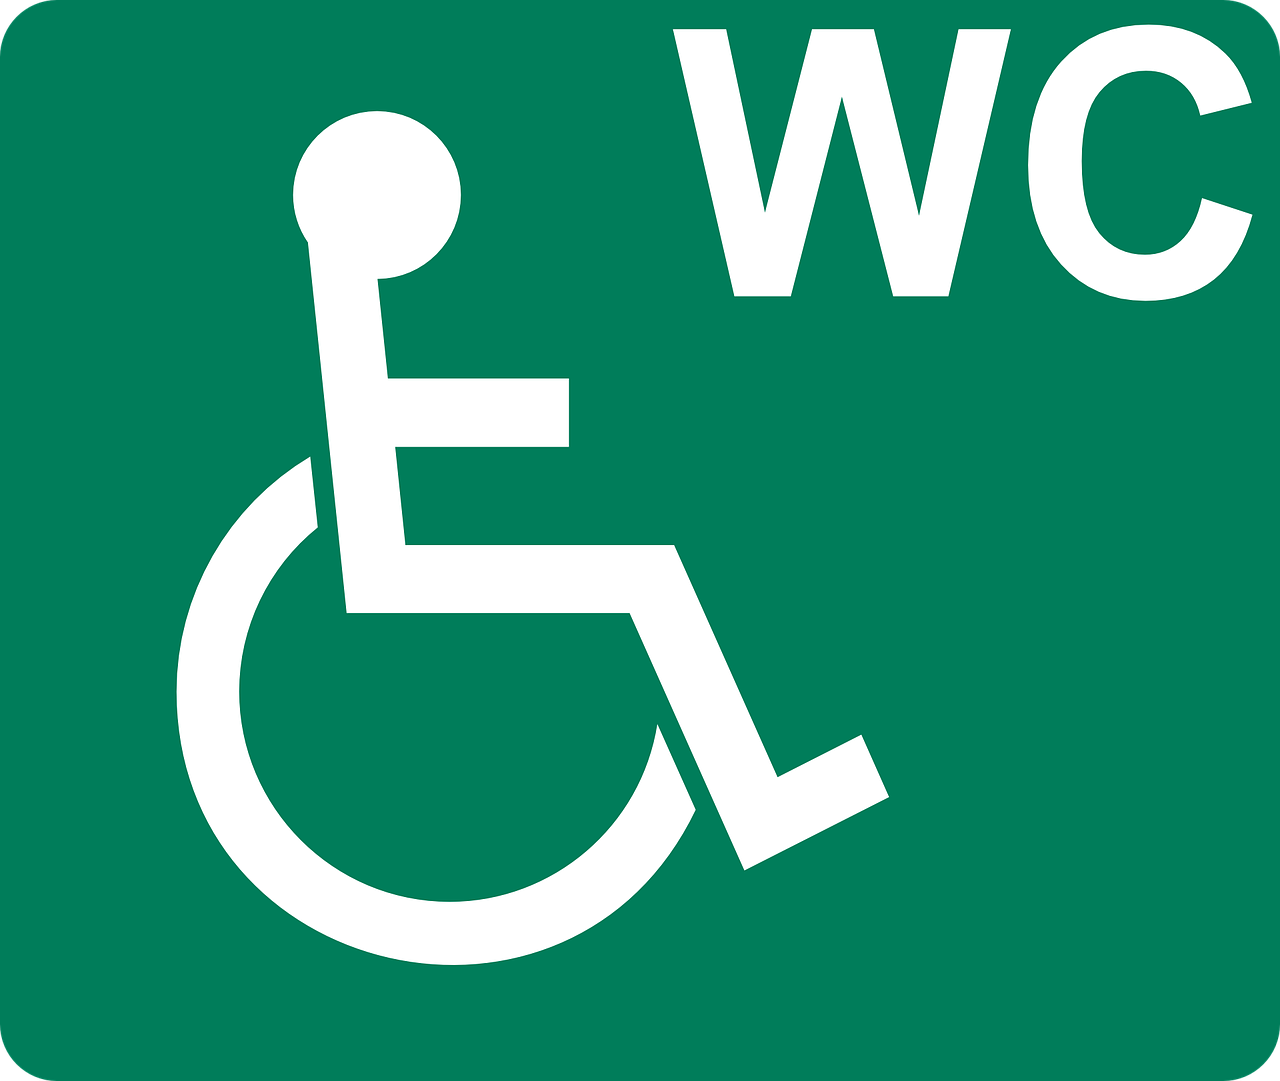 Kadootje Opmaat 's Heeren Loo Ervaren instelling gehandicaptenzorg verstandelijk gehandicapten